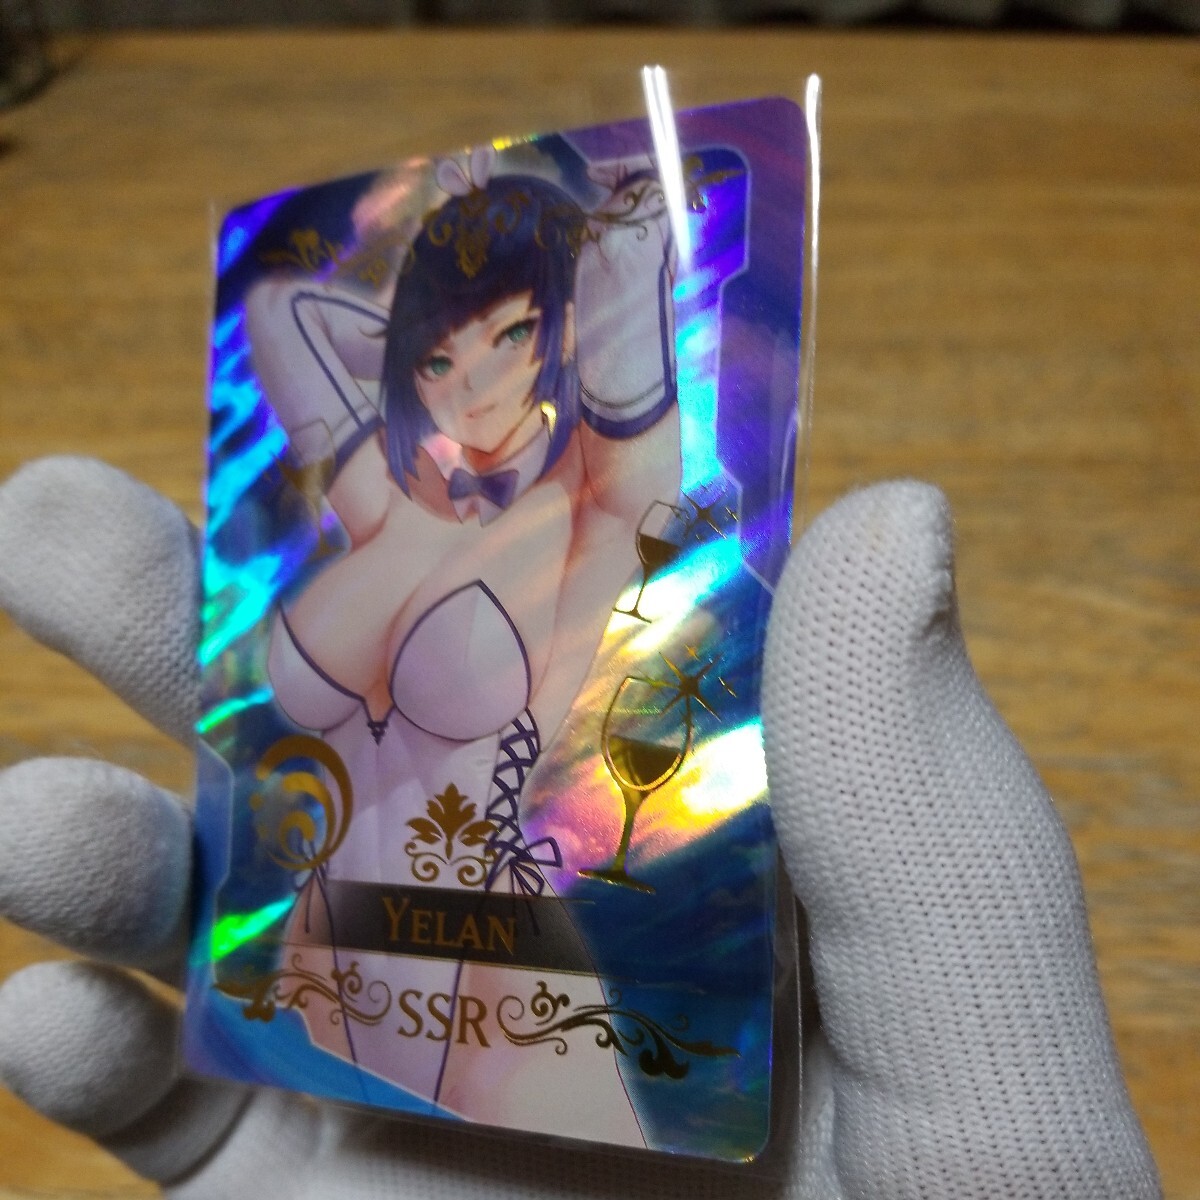 【新品未使用】ACGカード 海外製 セクシーカード 原神 イェラン 夜蘭 ファンカード 美少女035の画像2